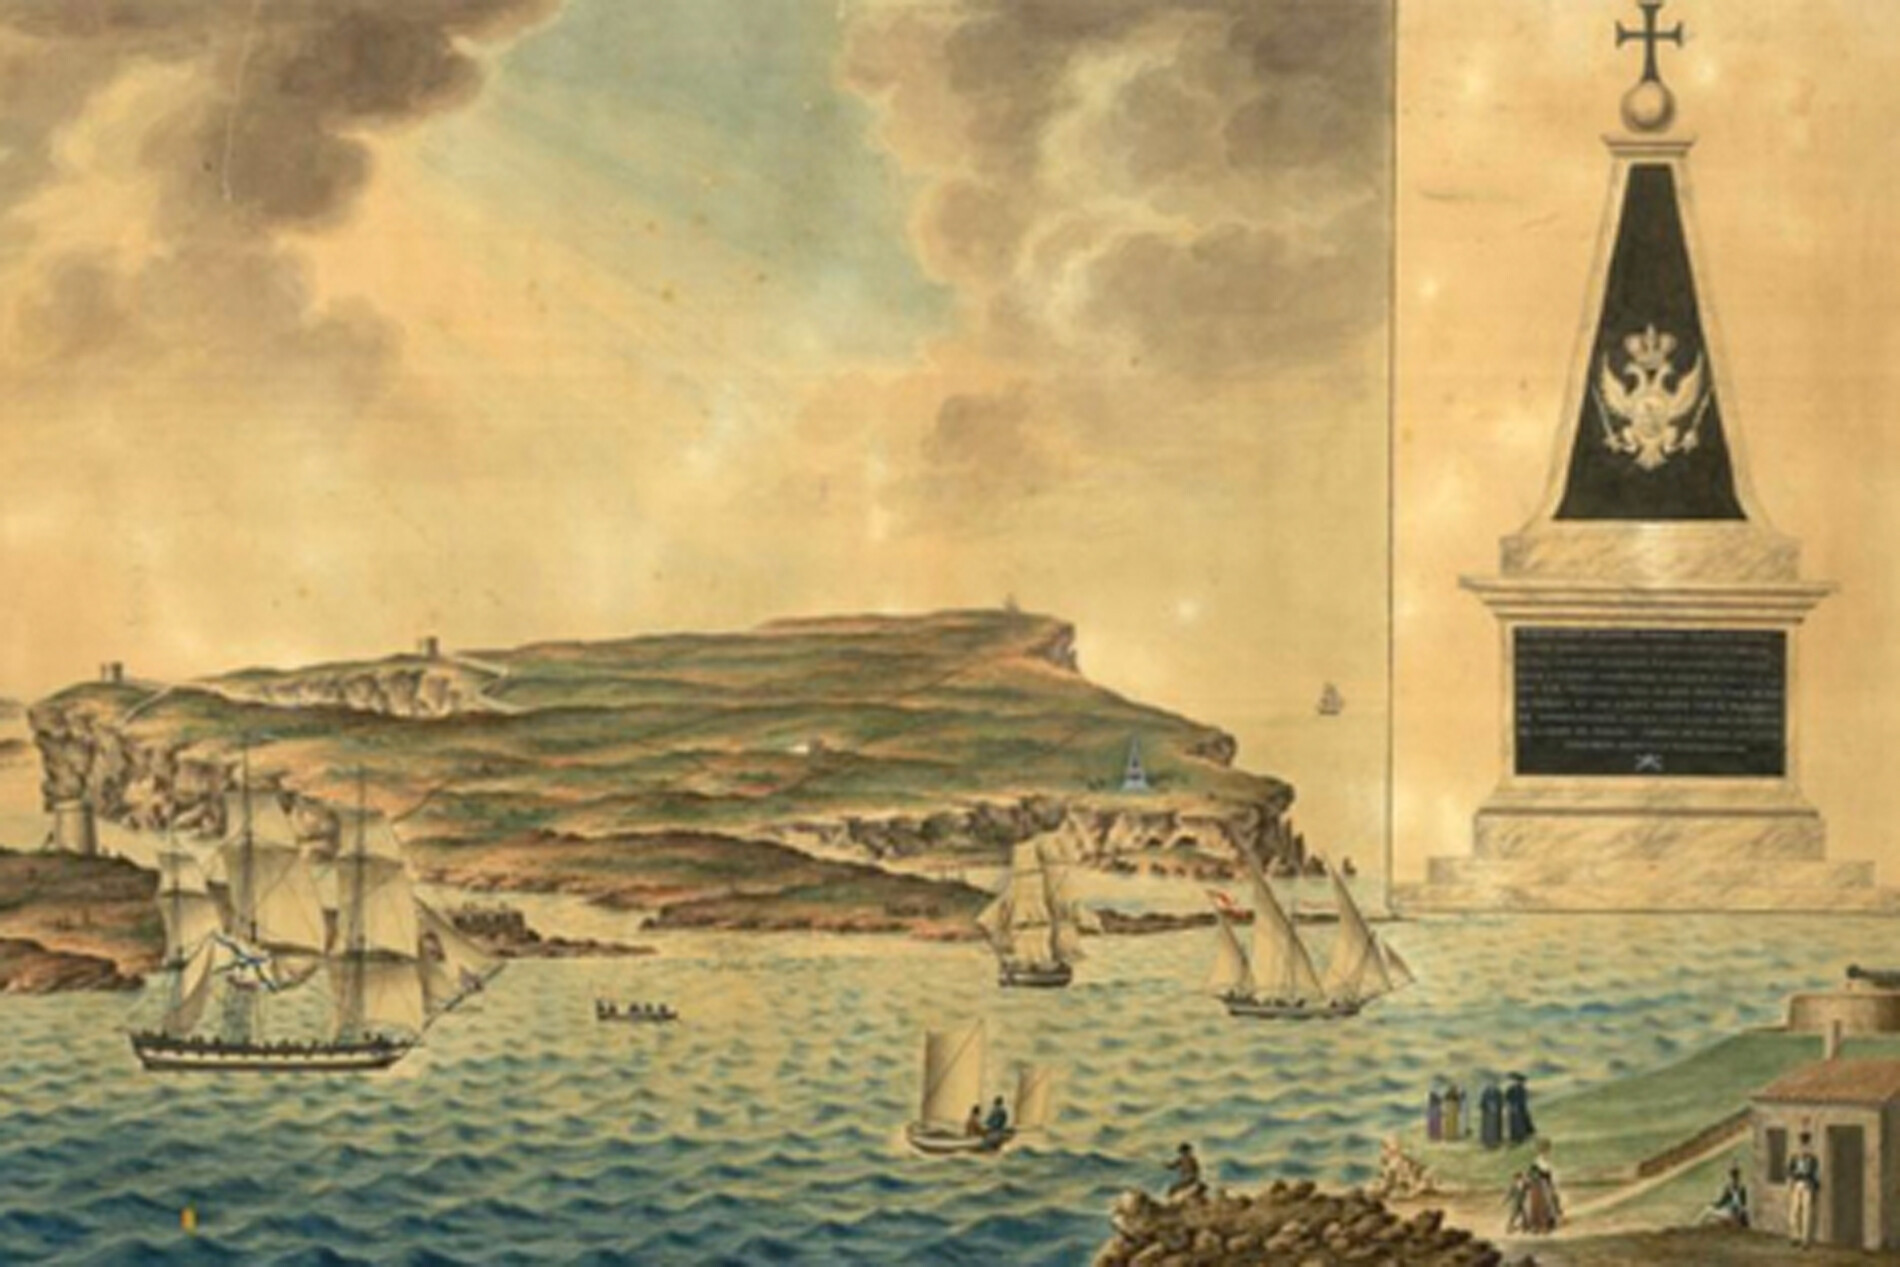 Vista panorámica de la Mola de Mahón donde se encontraba el obelisco a los marinos rusos fallecidos en 1770. Acuarela de un autor desconocido.